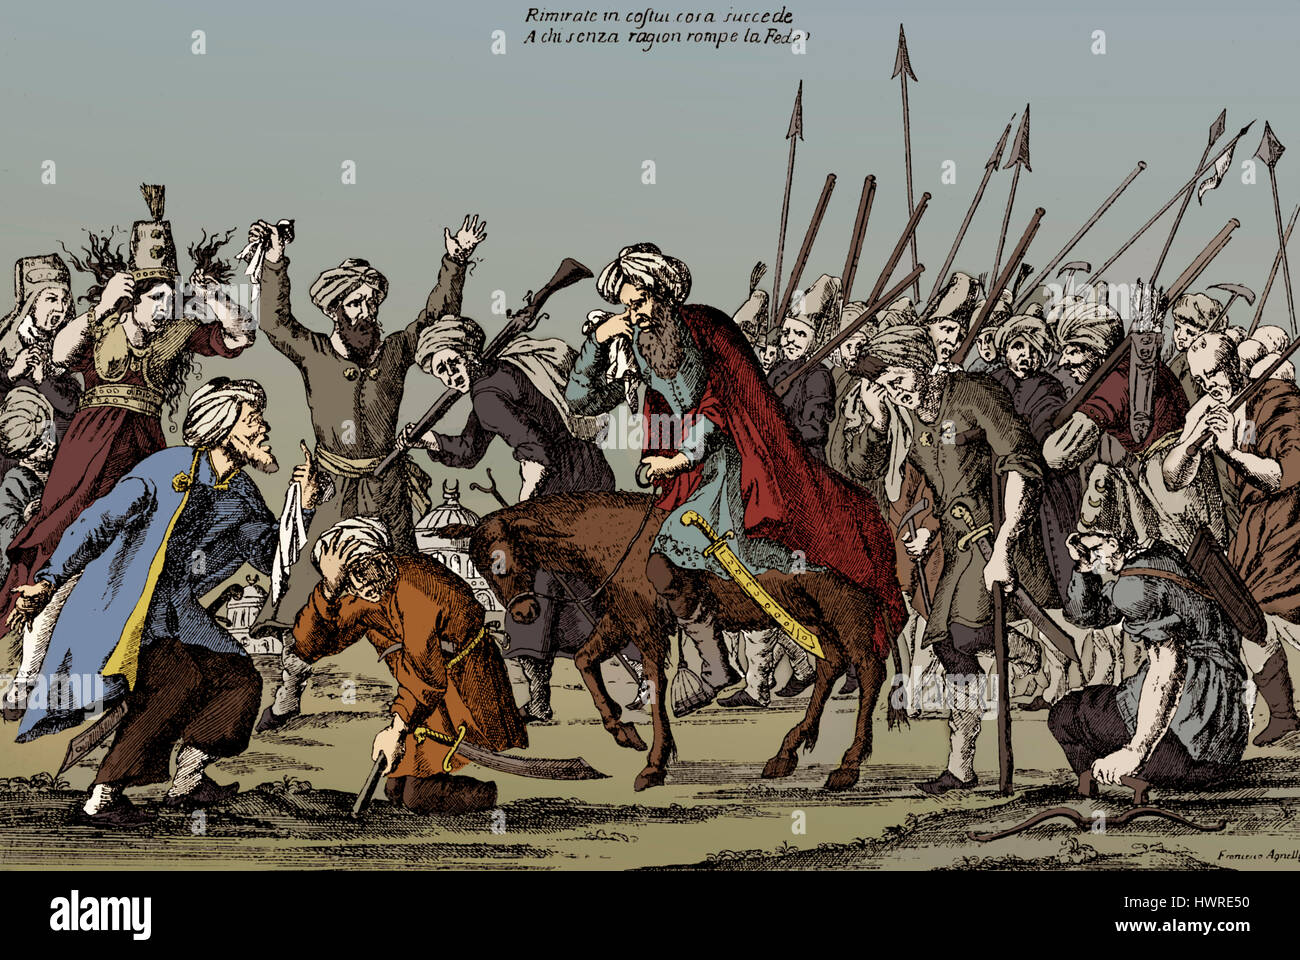 Die osmanischen Grand Vizier Haci Halil Pascha kehrt zurück nach Konstantinopel nach dem Verlust von Belgrad an die Österreicher unter Eugen von Savoyen, Belagerung von Belgrad 1717, österreichisch-türkischen Krieg (1716-1718) Stockfoto